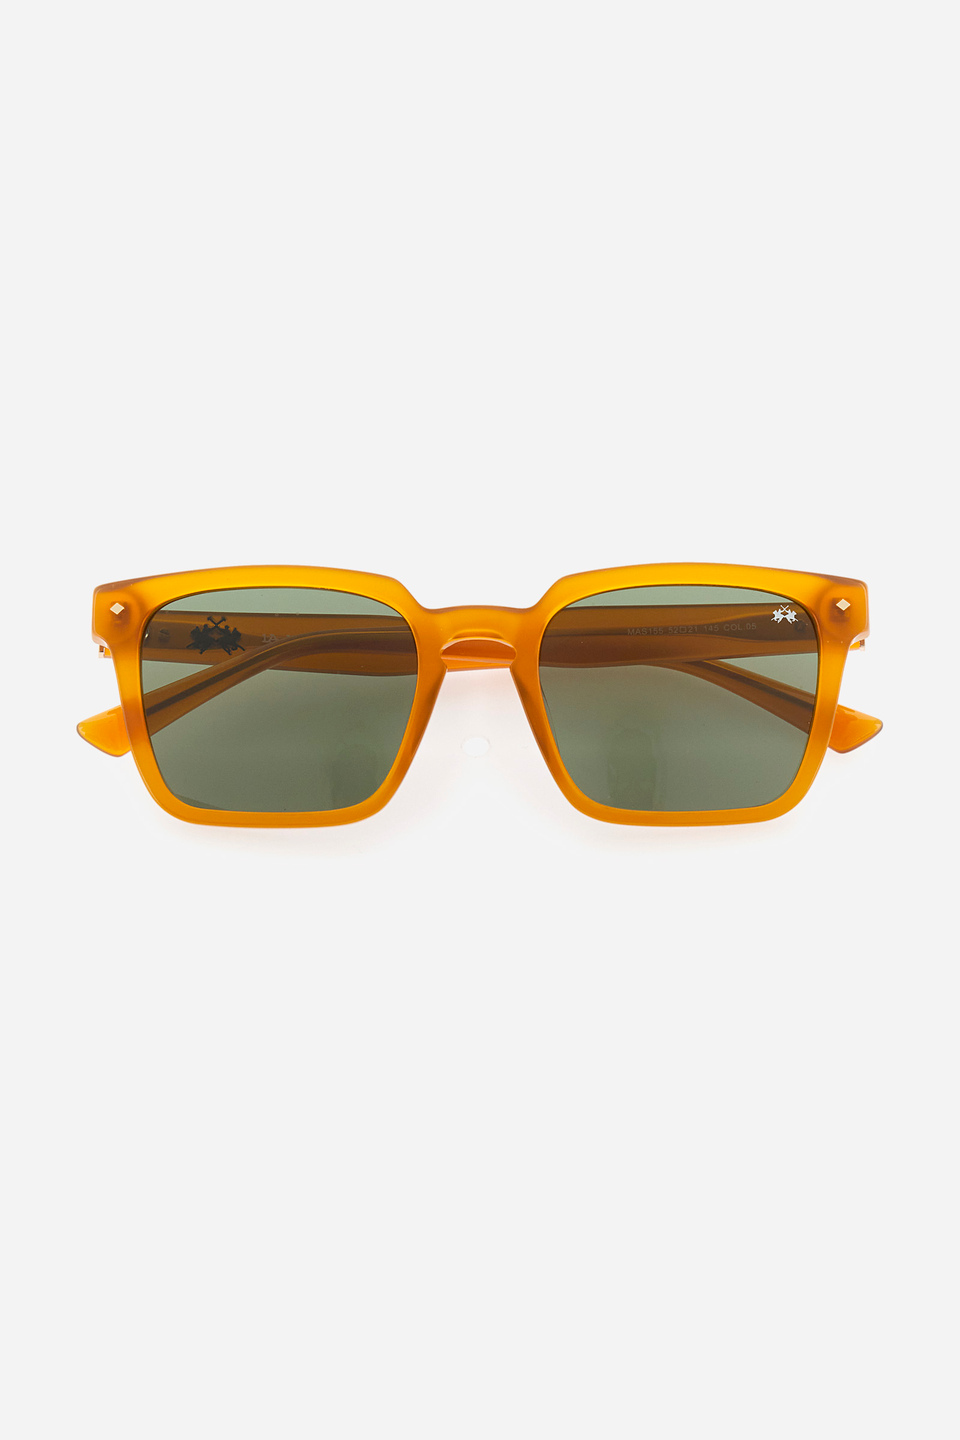 Gafas de sol de hombre modelo cuadrado | La Martina - Official Online Shop